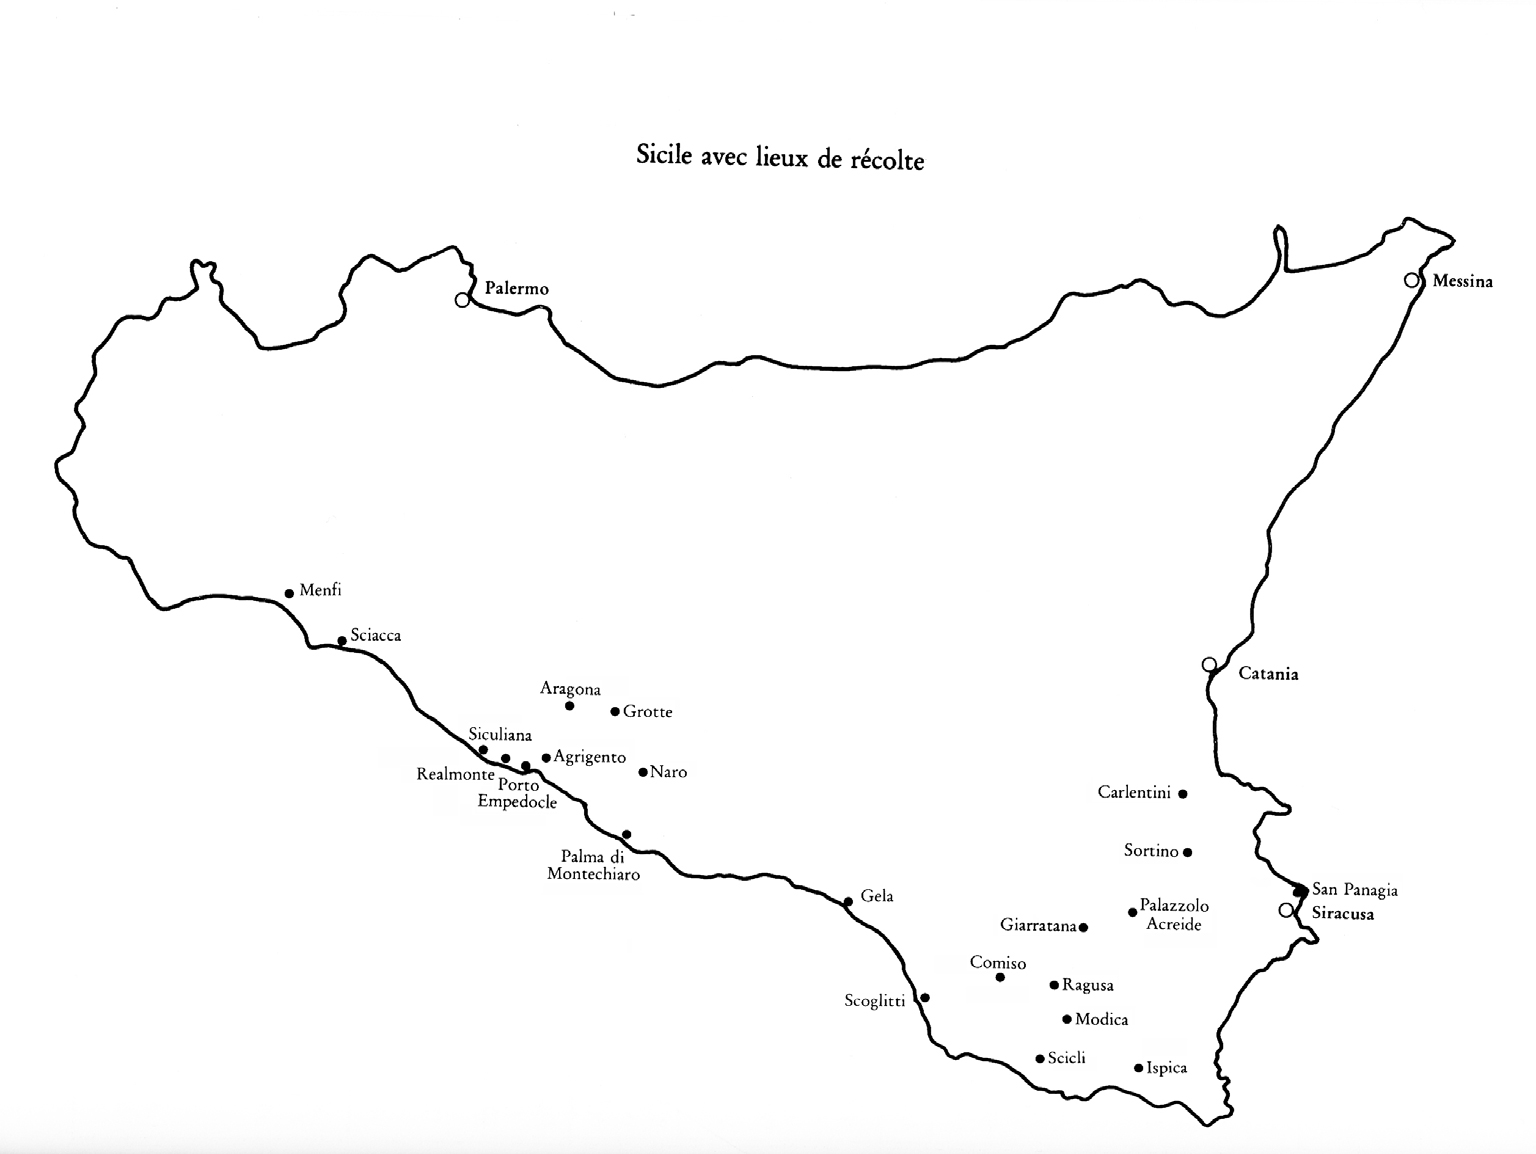 Mappa della Sicilia con le località visitate dai due gruppi